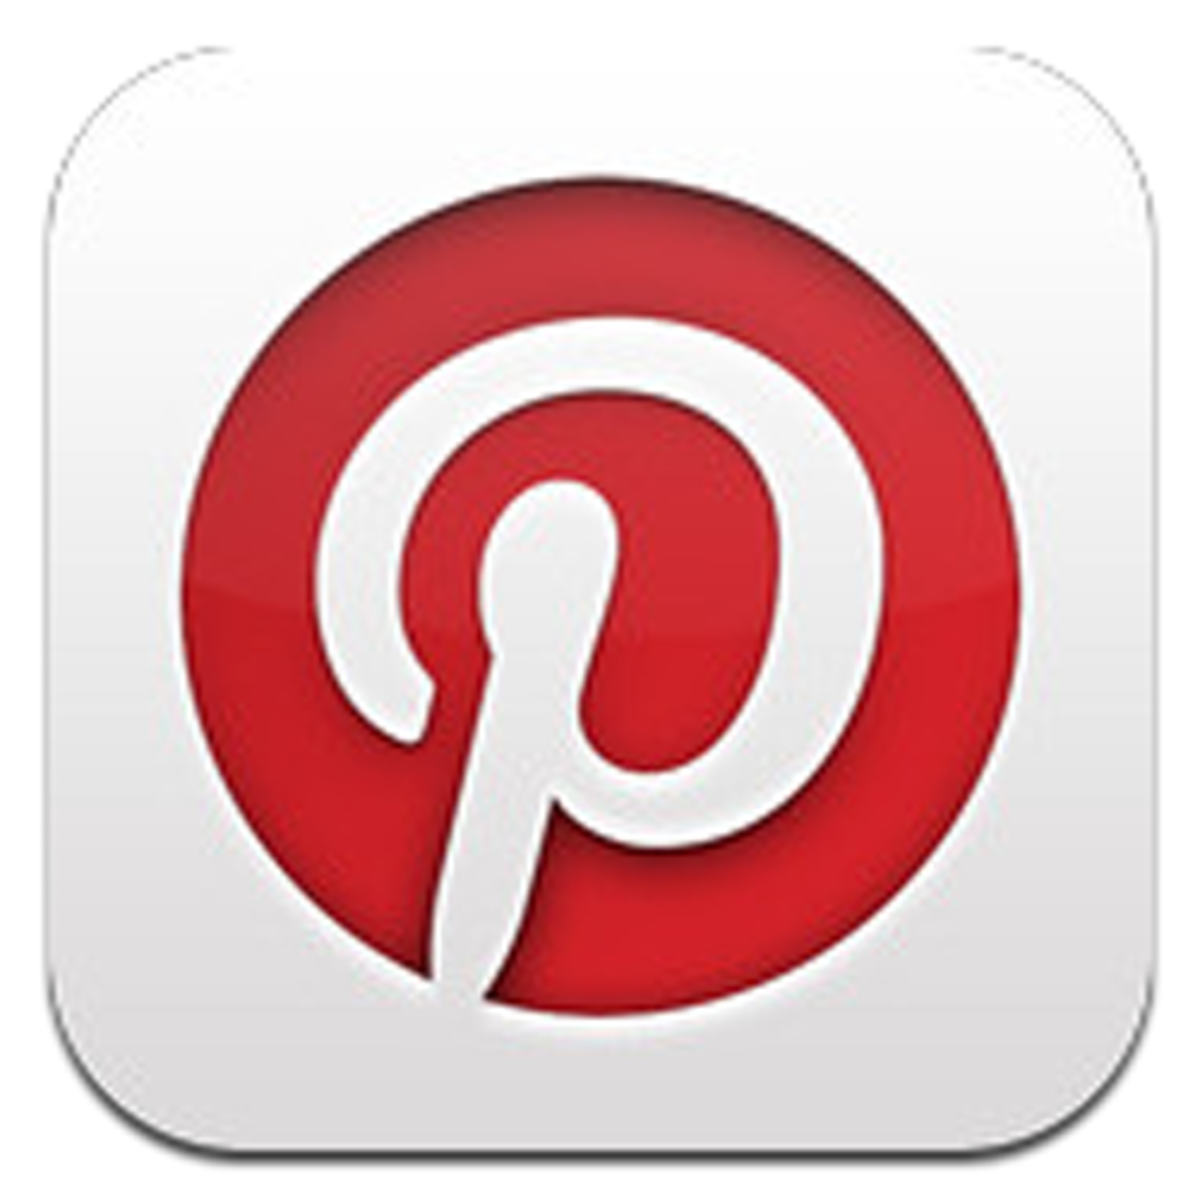 Pinterest for iPhone 5 logo